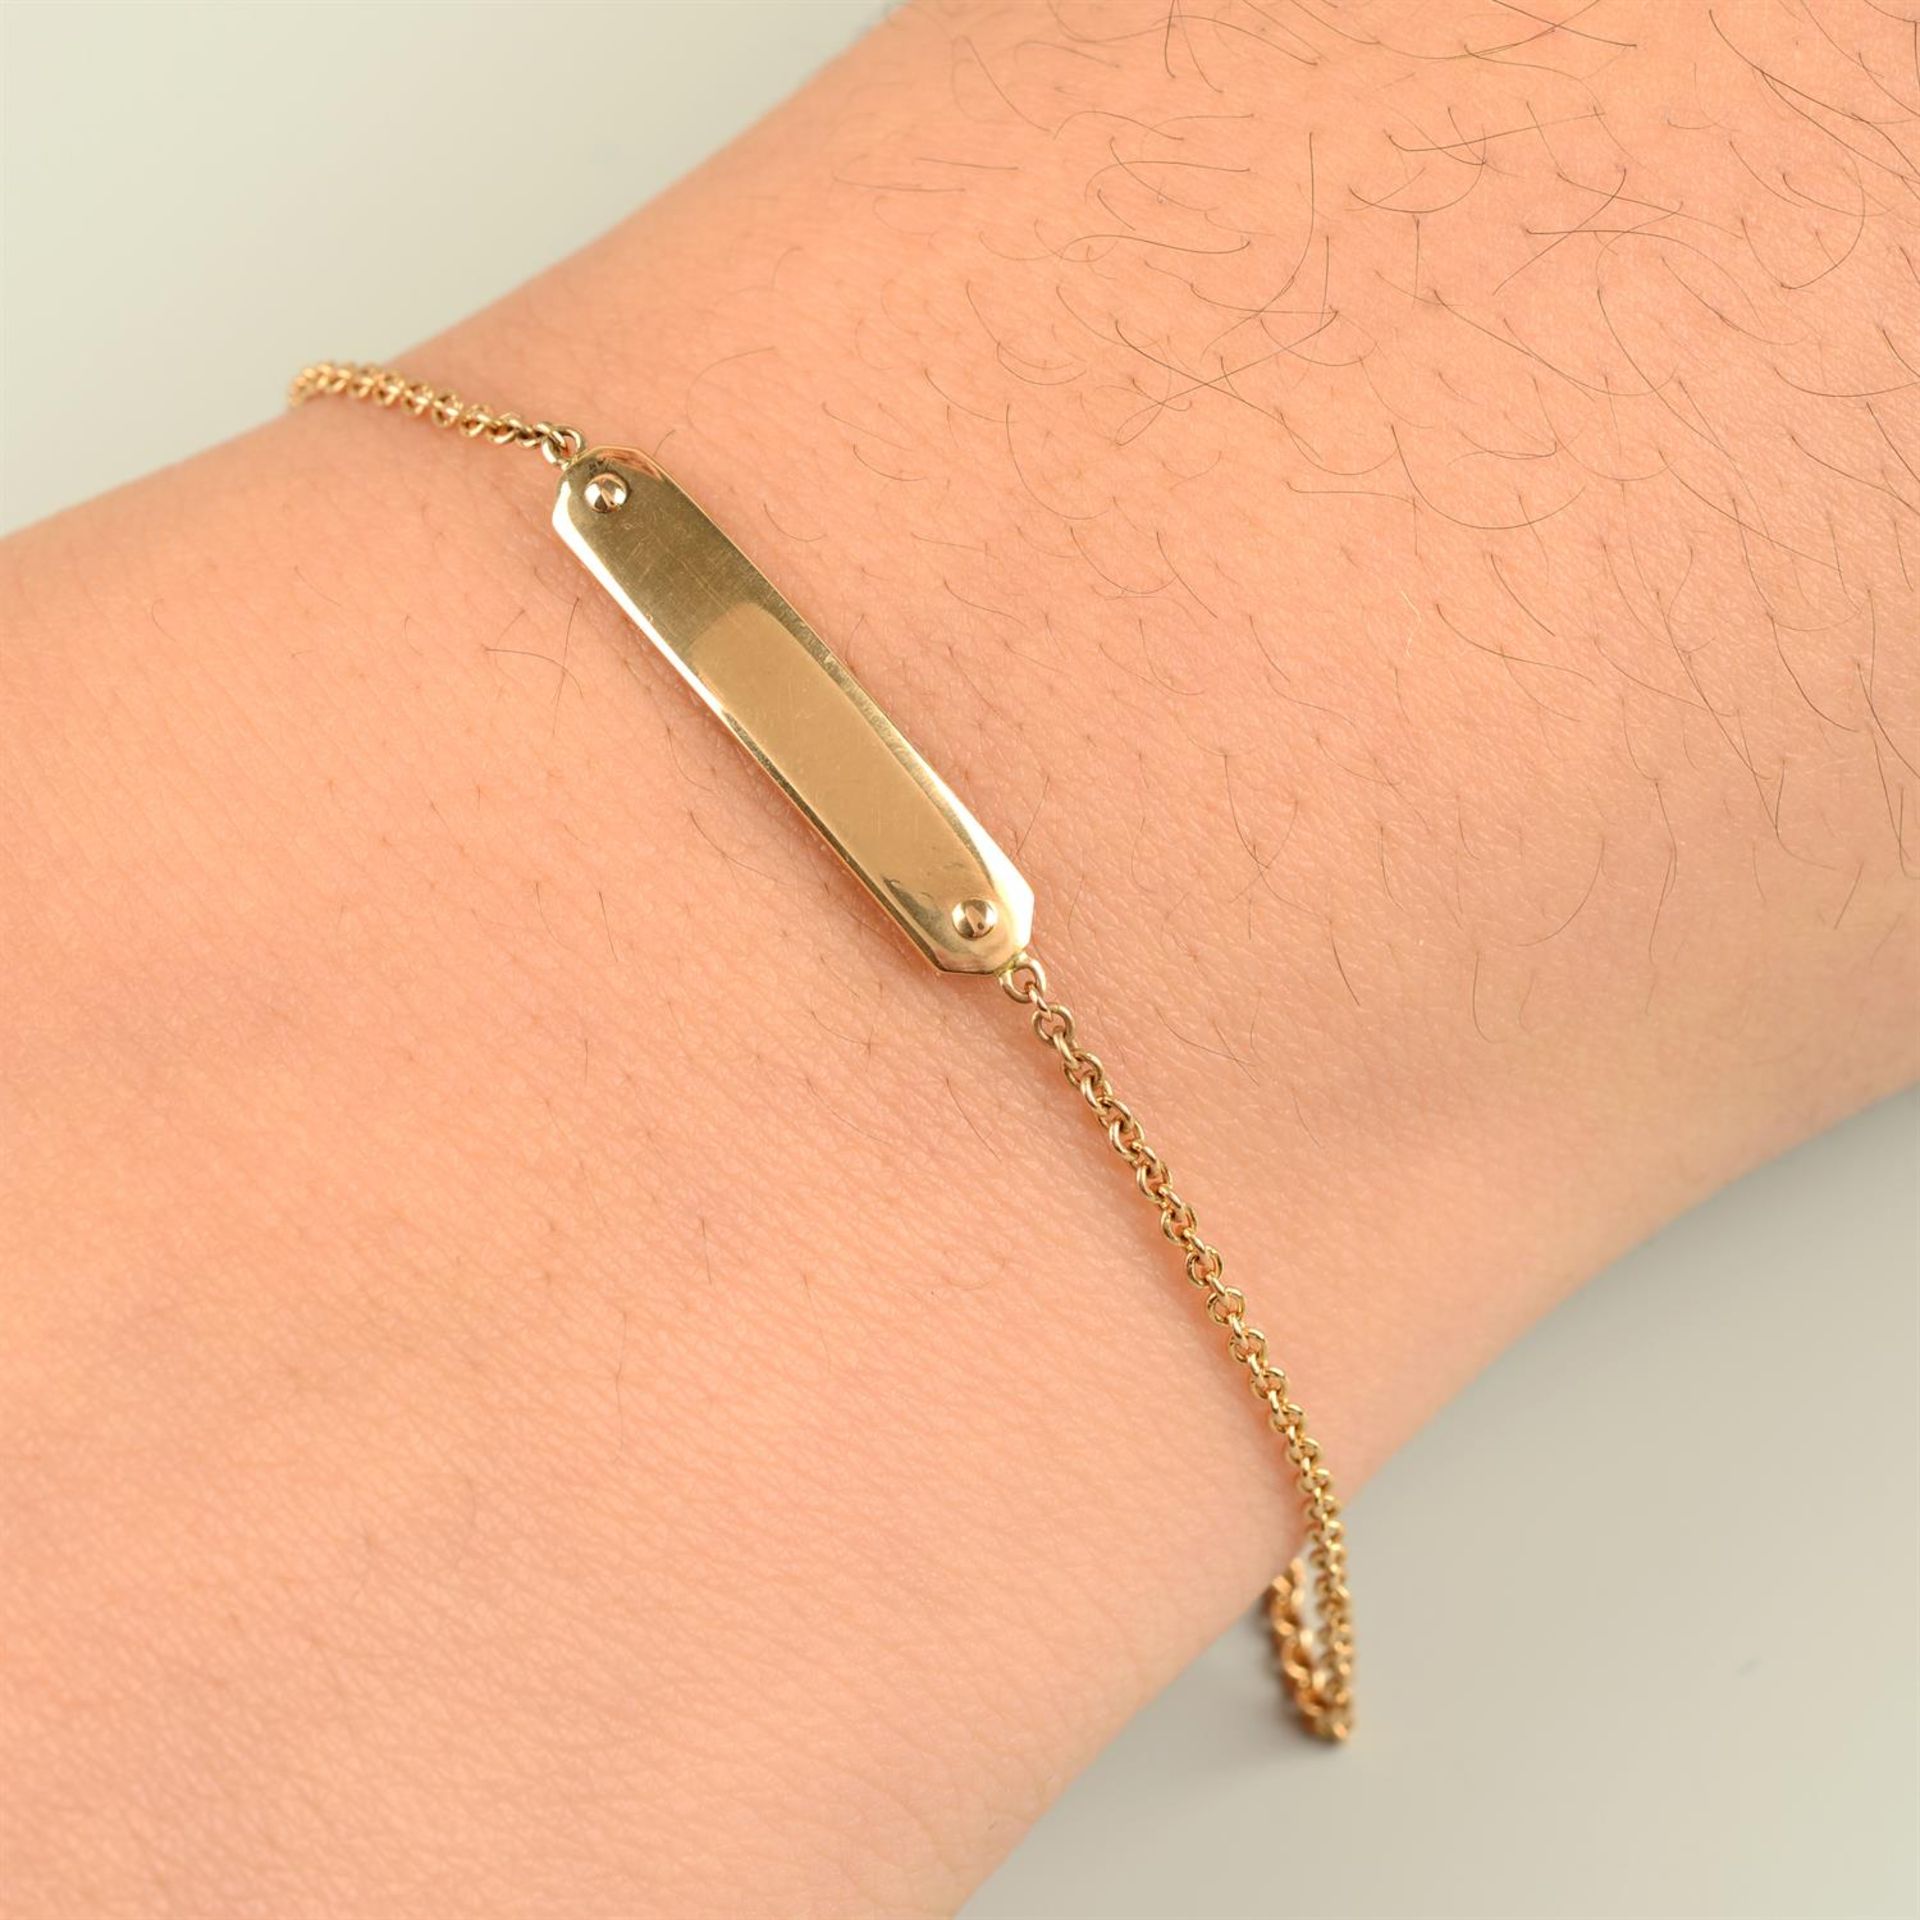 An ID trace-link bracelet, by Tiffany & Co.